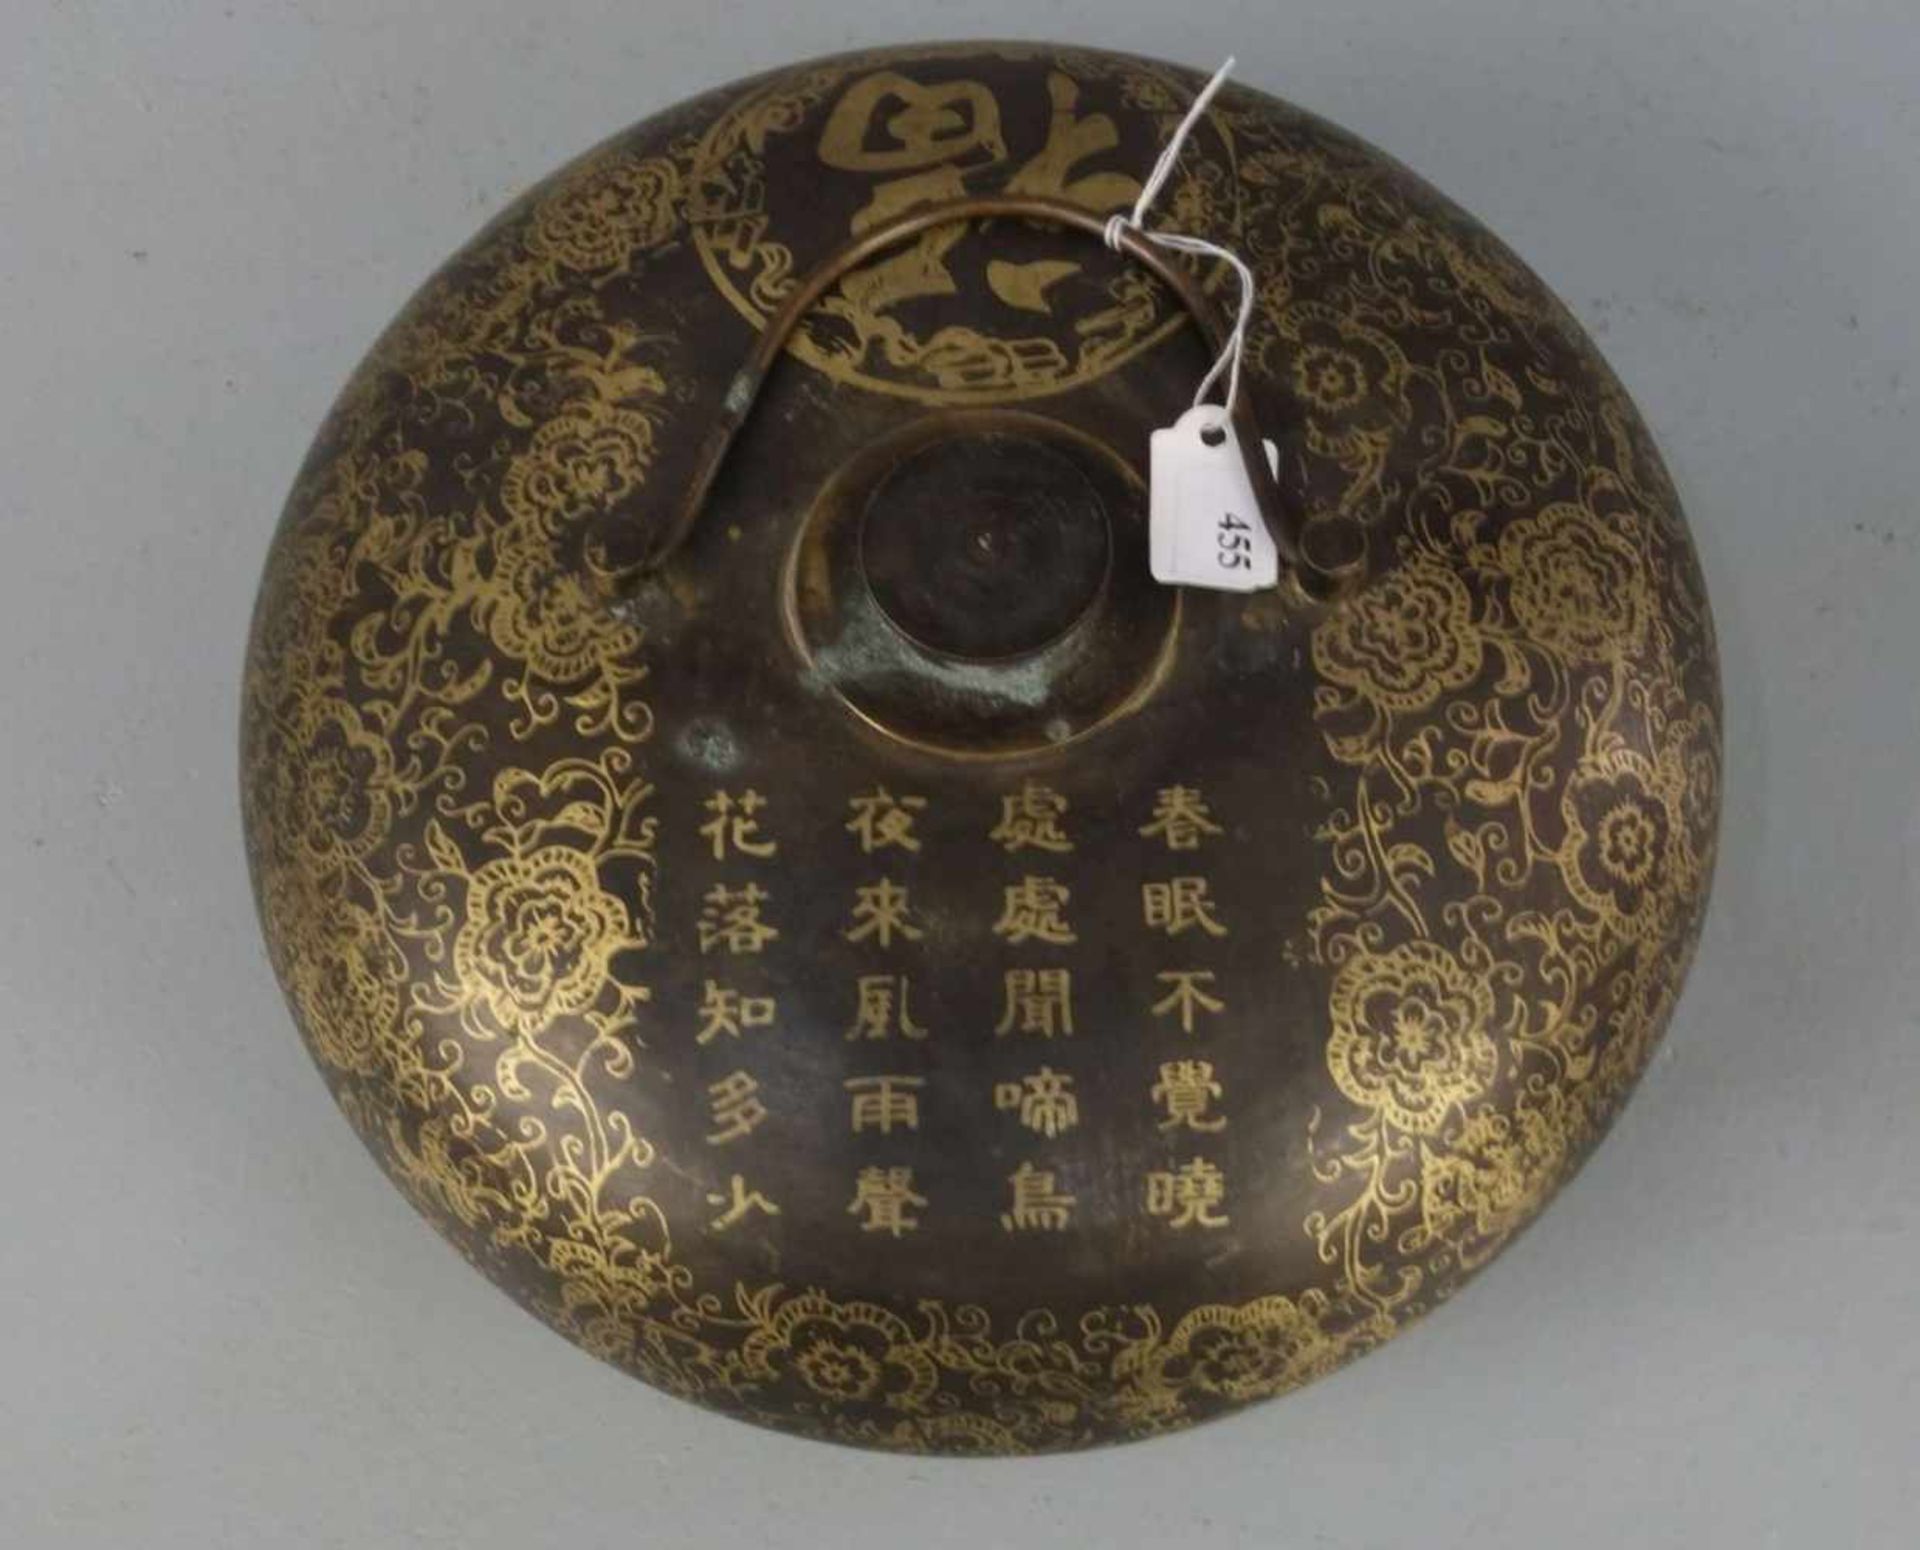 CHINESISCHE WÄRMFLASCHE / hot-water bottle, China, Anfang 20. Jh., Bronze braun patiniert und in - Image 3 of 4